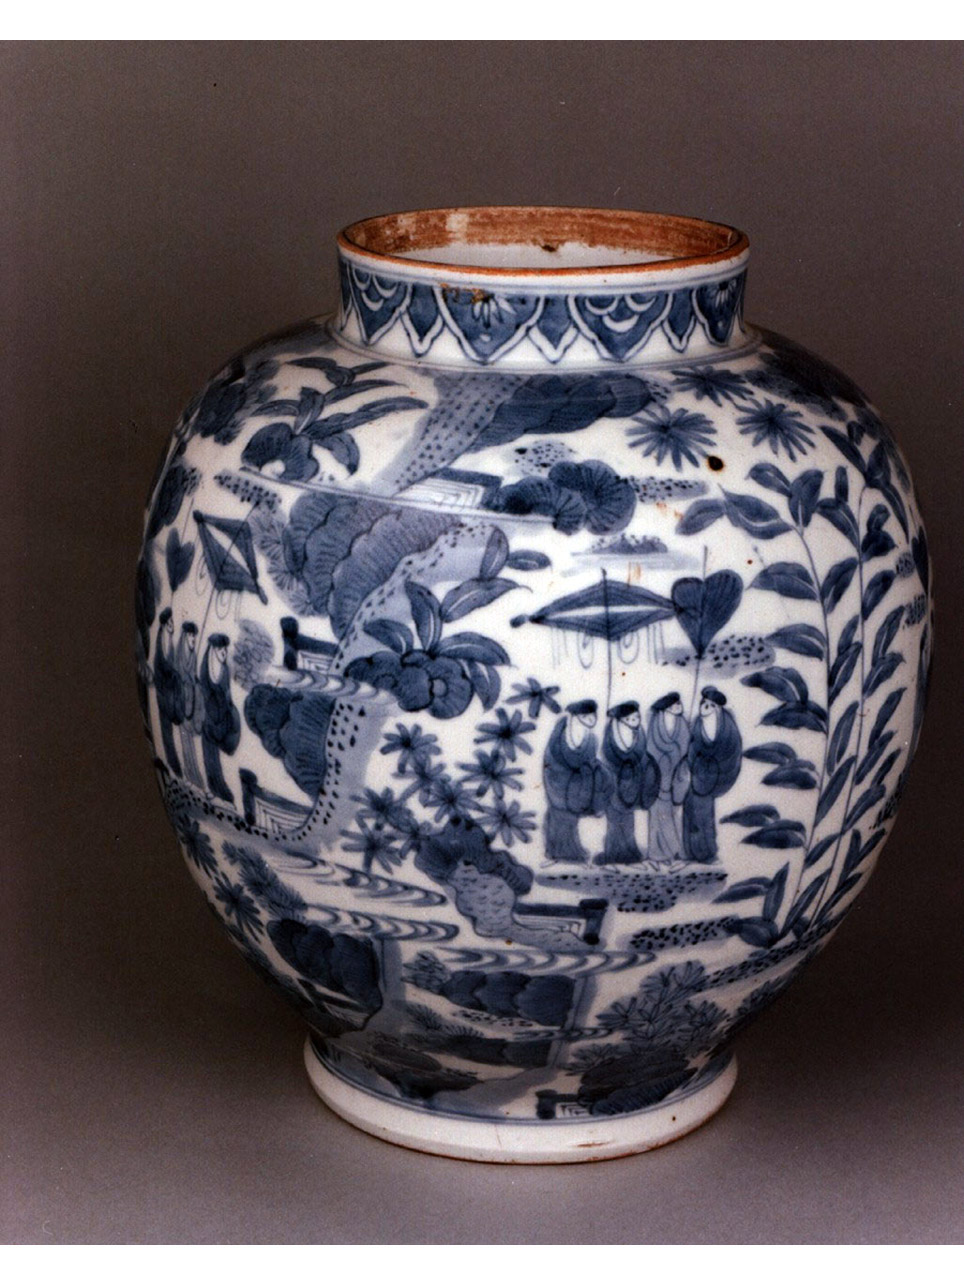 paesaggio con figure/ motivi decorativi vegetali (vaso) - manifattura giapponese (seconda metà sec. XVII)